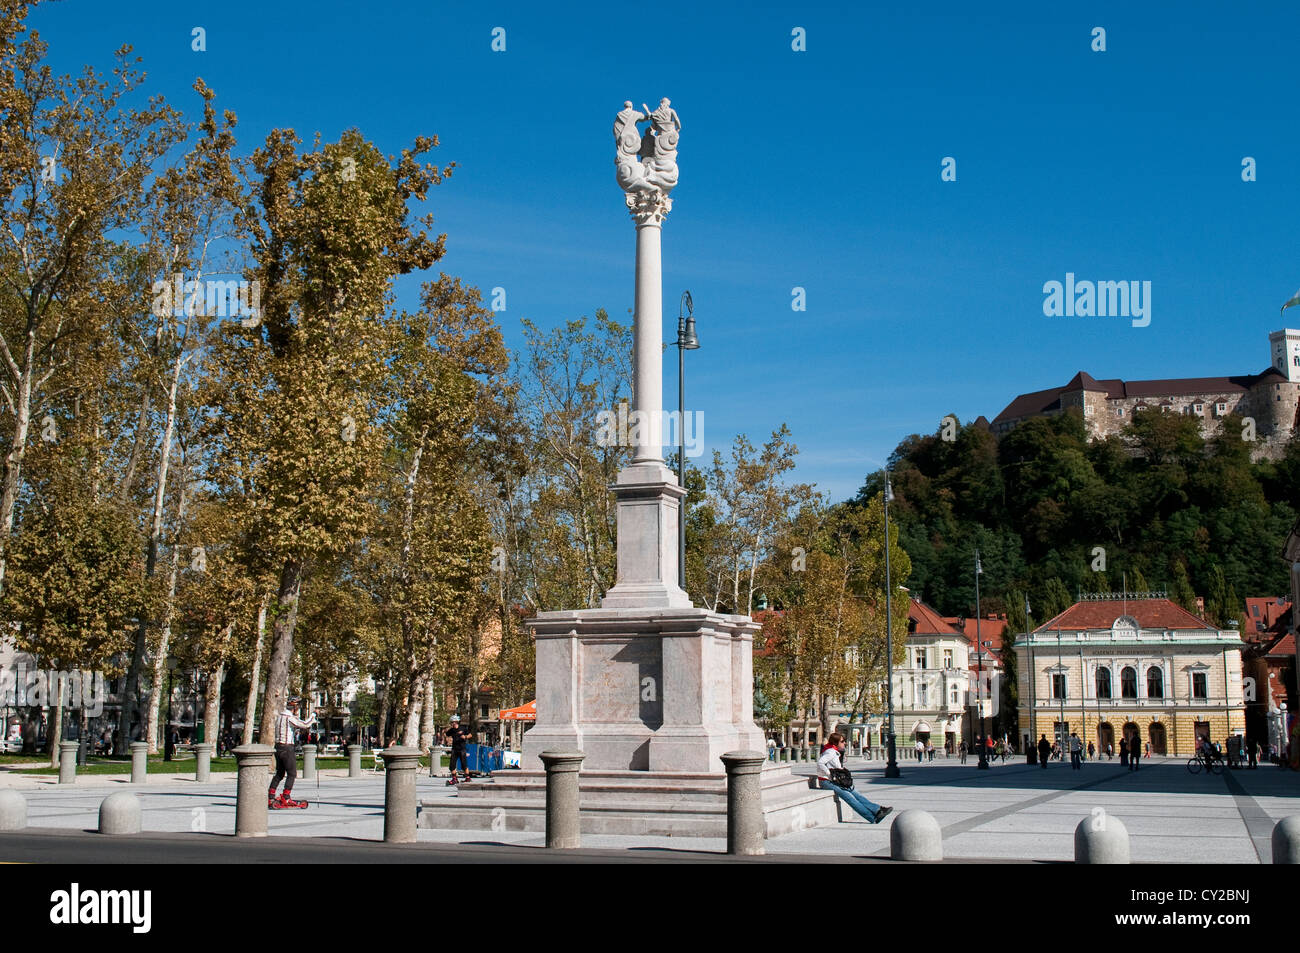 Replica of a golden Roman monument, Congress Square, Ljubljana, Slovenia Stock Photo